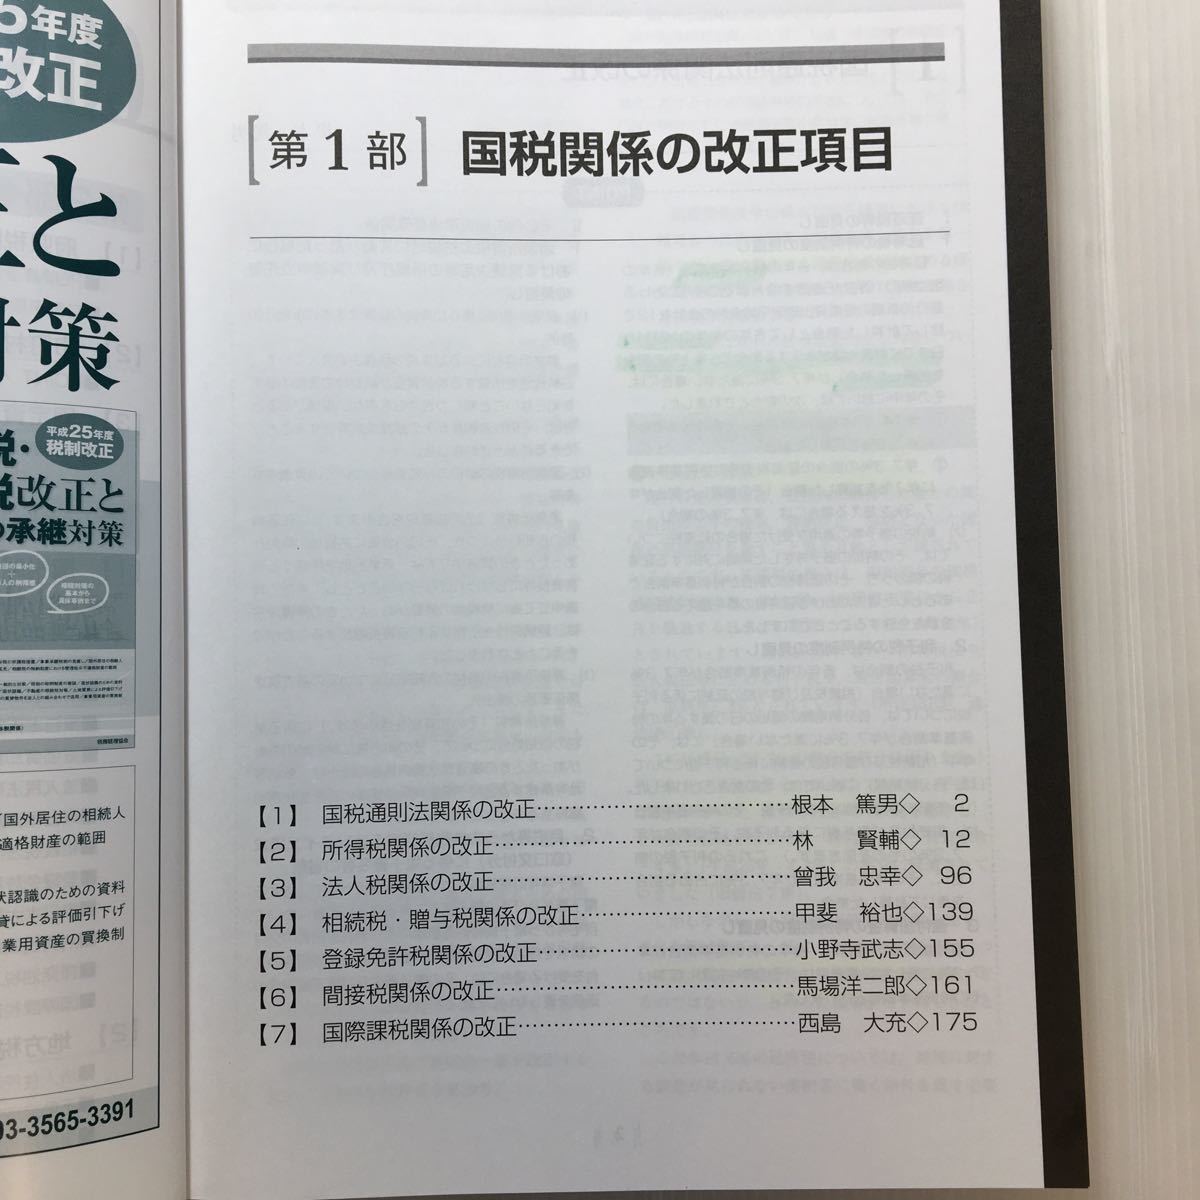 zaa-185♪税経通信臨時増刊 平成25年度改正税法特集号 2013年 09月号 [雑誌] 雑誌 2013/8/30